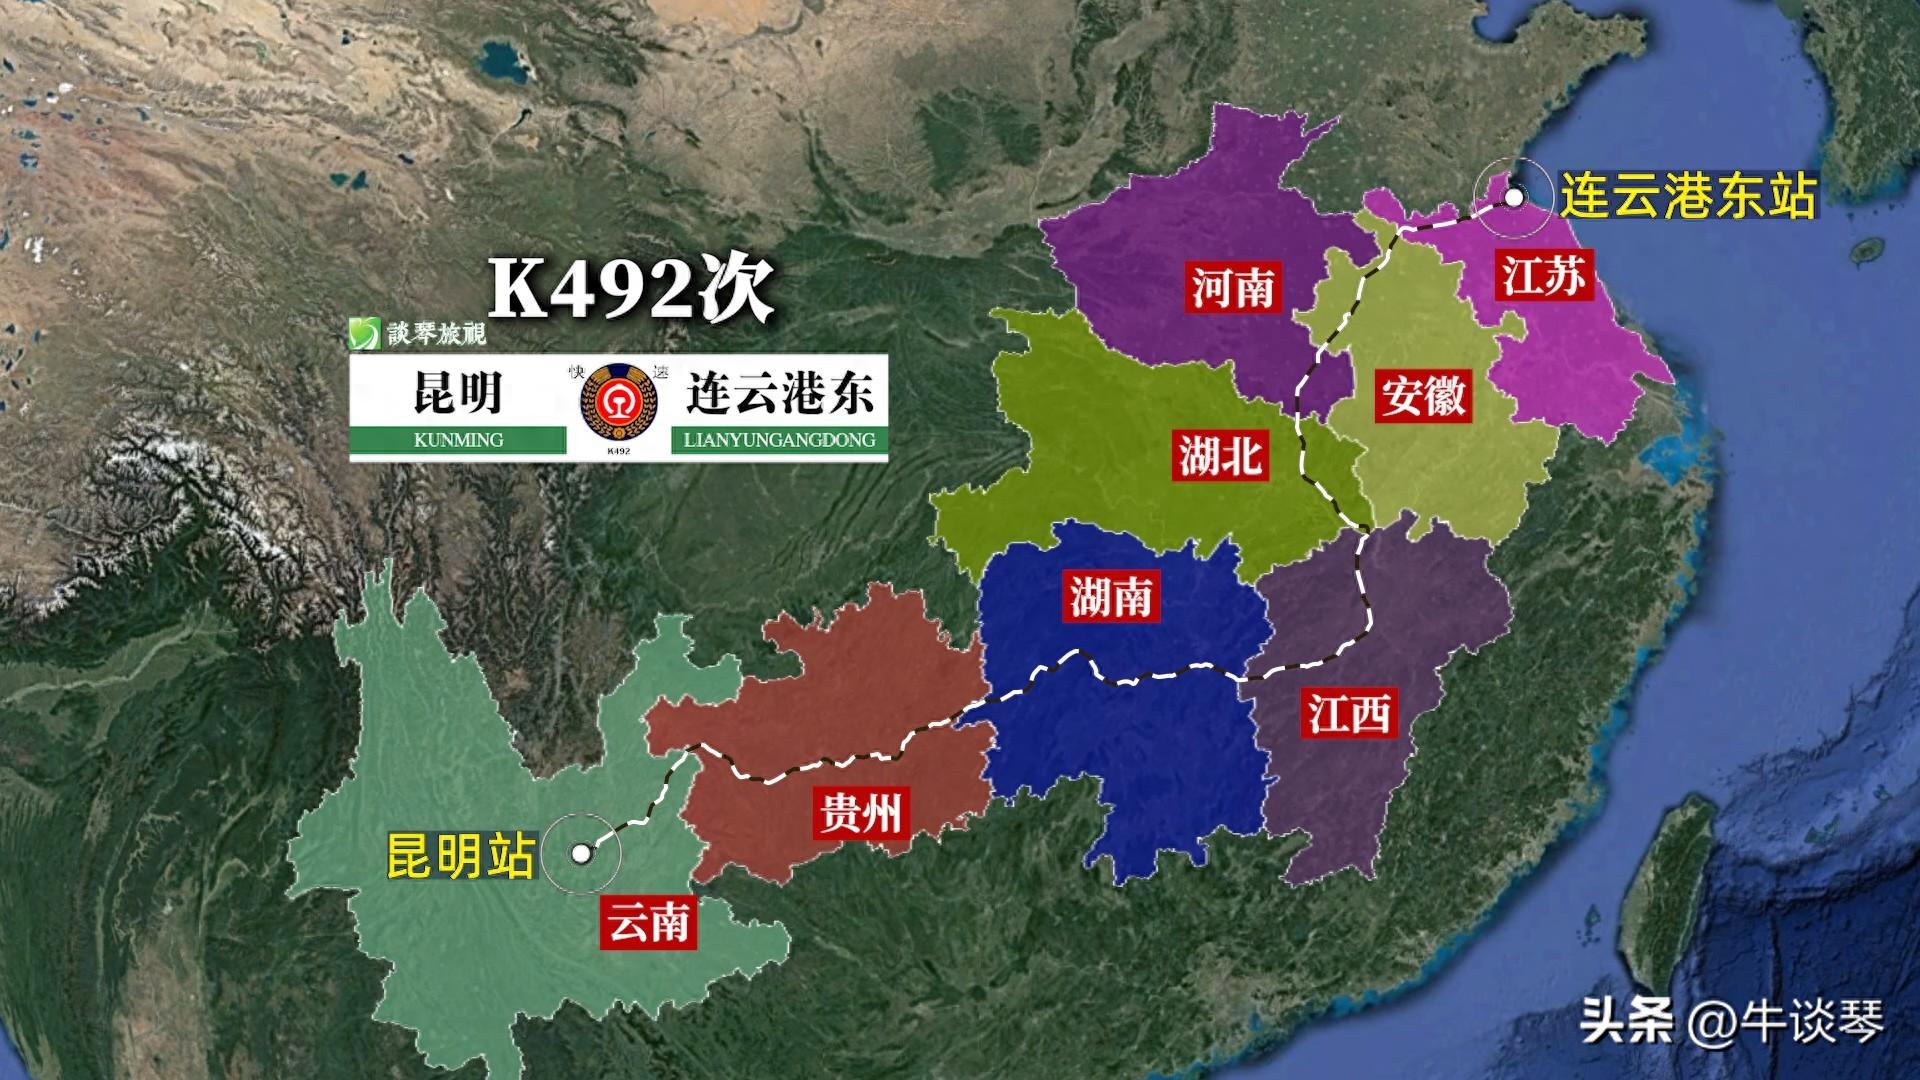 K492次列车运行线路图：云南昆明开往江苏连云港东，全程2929公里